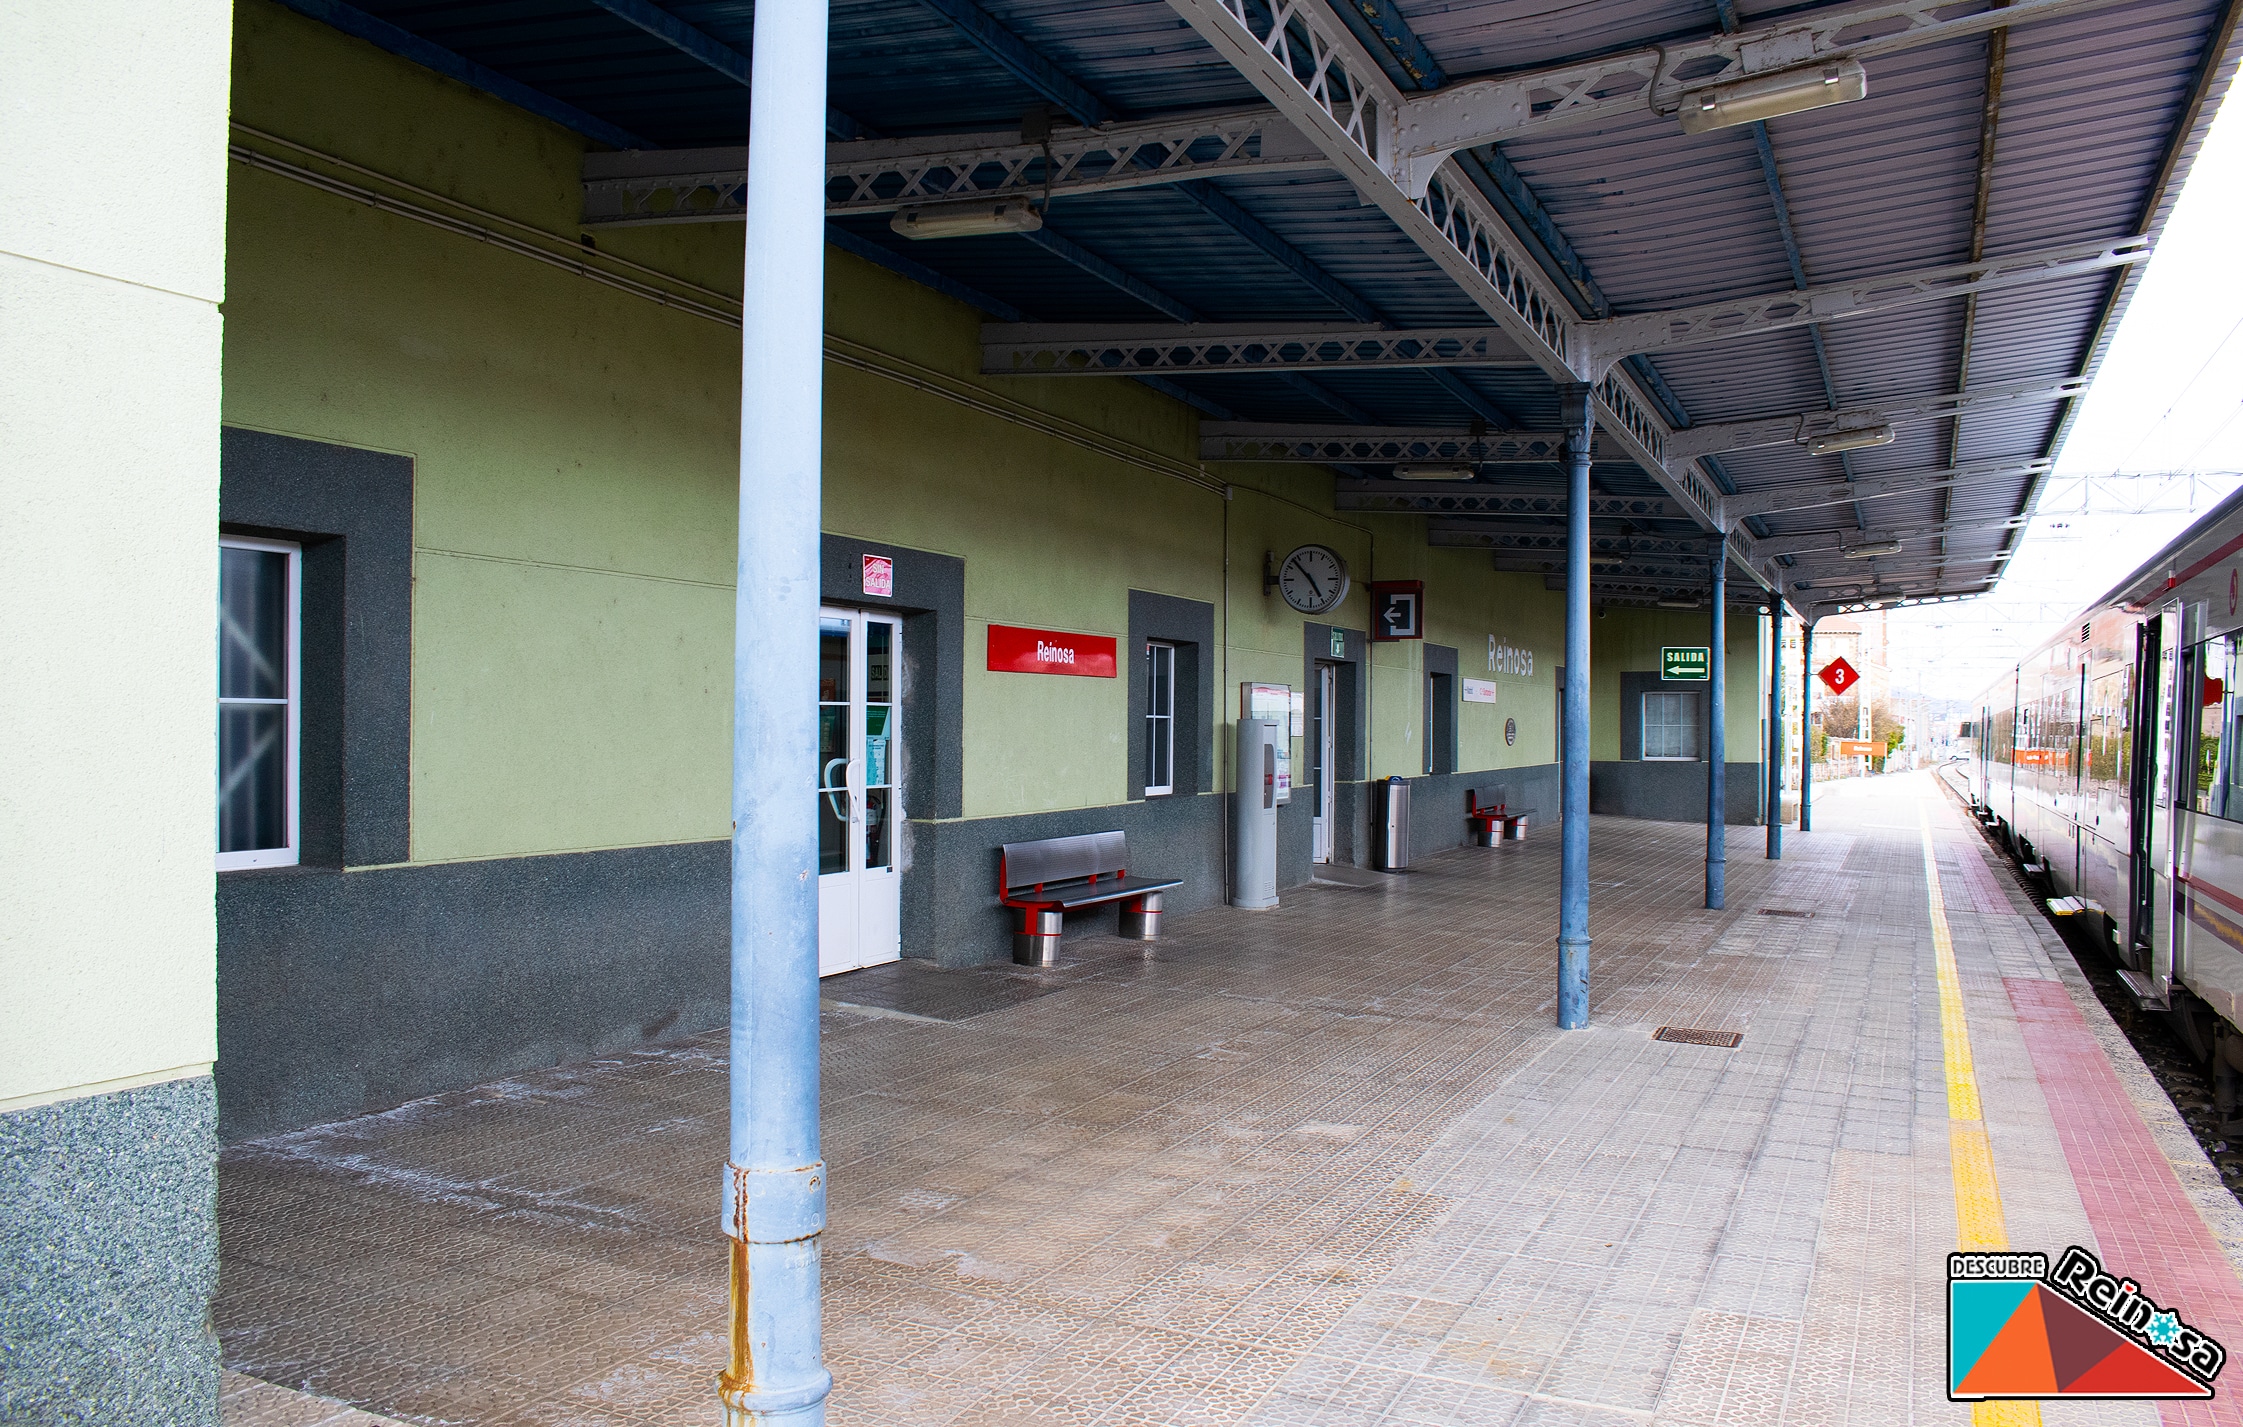 Estación de trenes Reinosa